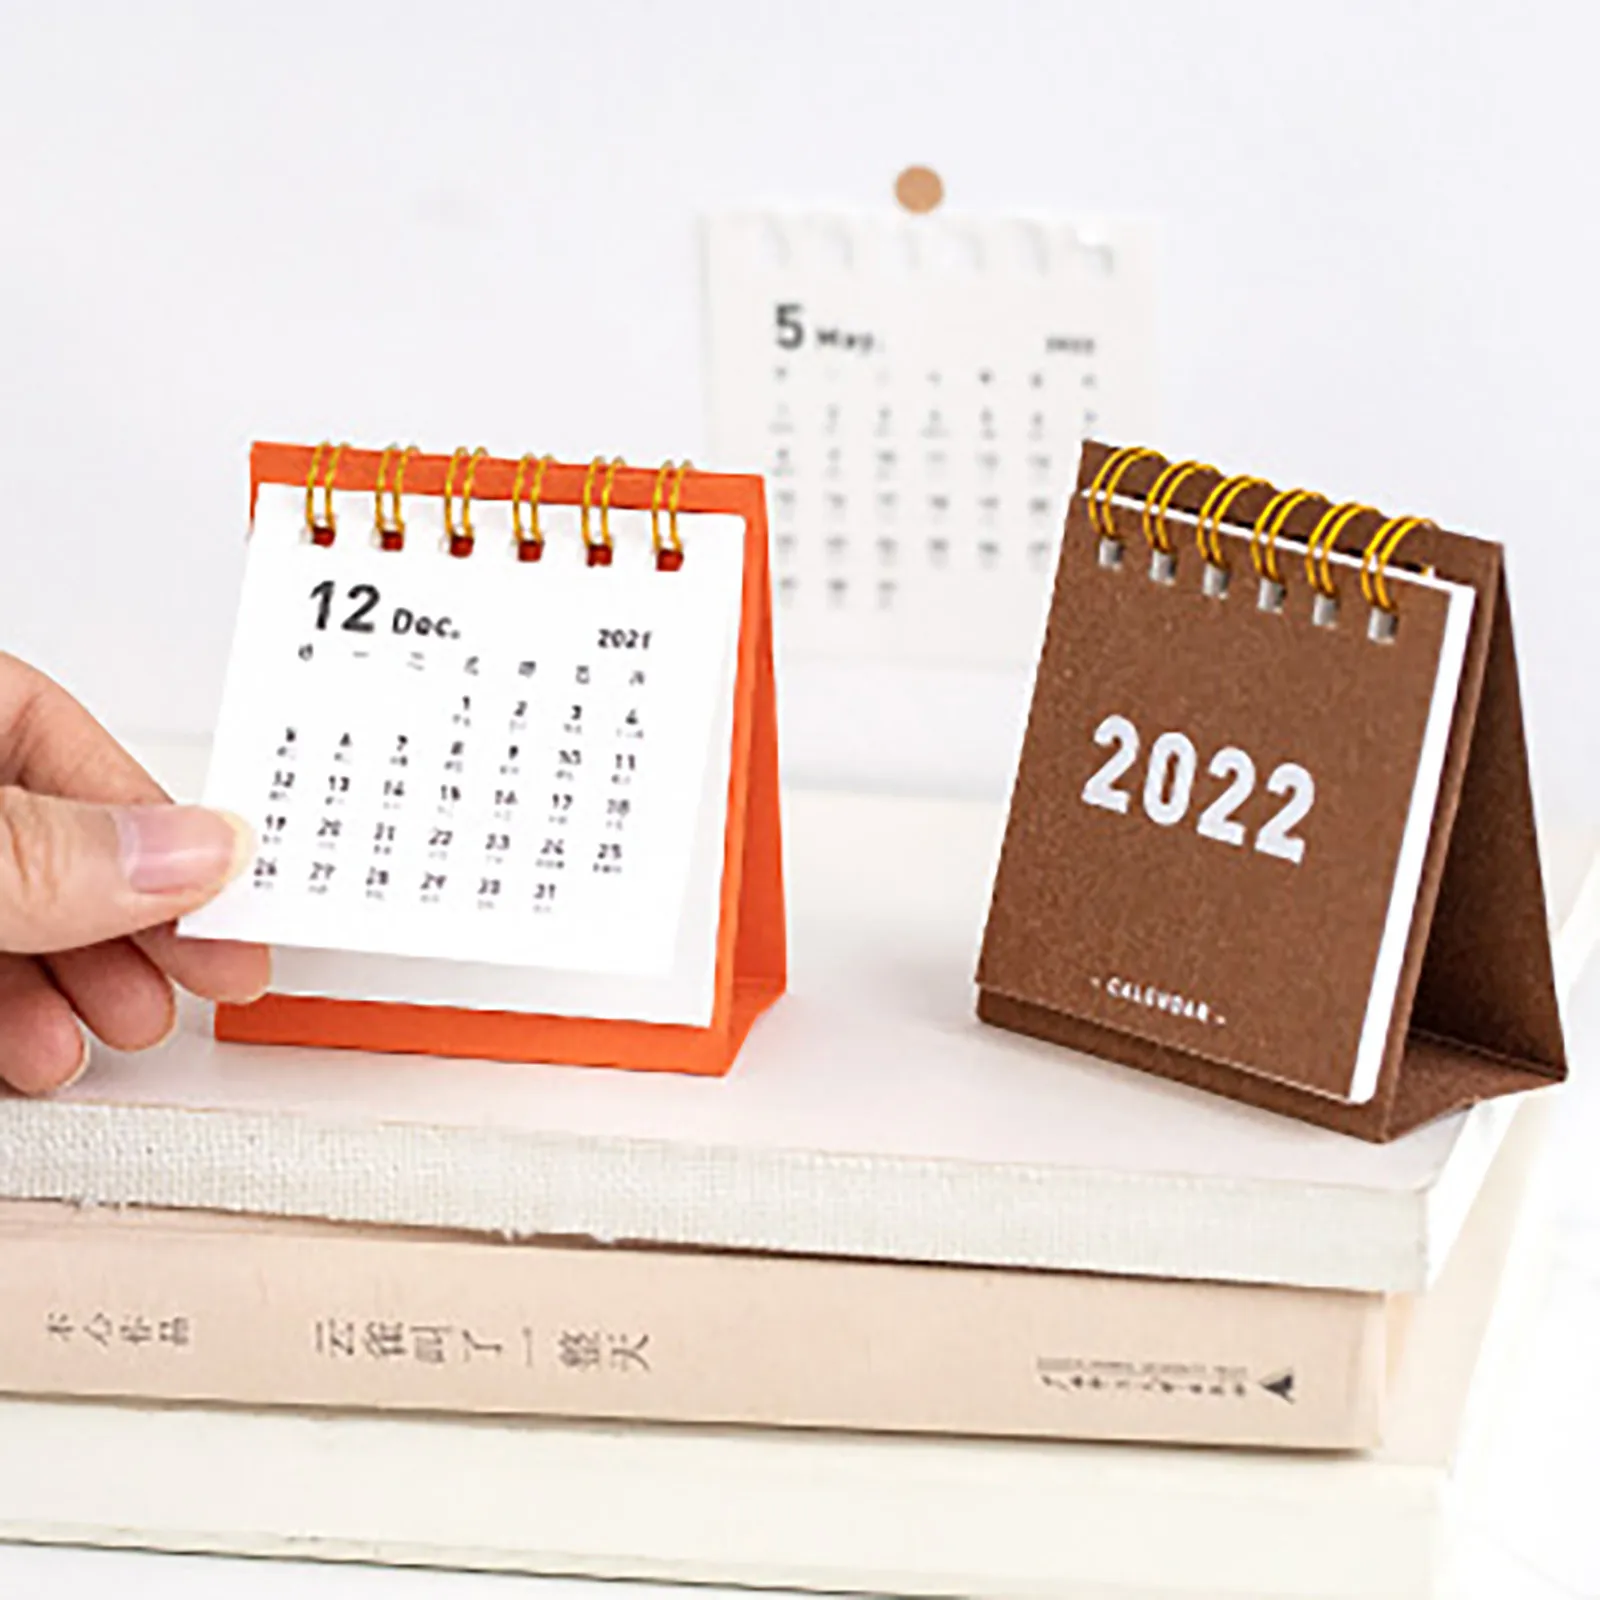 Pcc 2022 Calendar Mini Desktop Calendar 2022 Paper Daily Scheduler Pendulums Calendar Kawaii  Desk Planner Yearly Monthly Calendar Agenda Organizer|Advent Calendars| -  Aliexpress